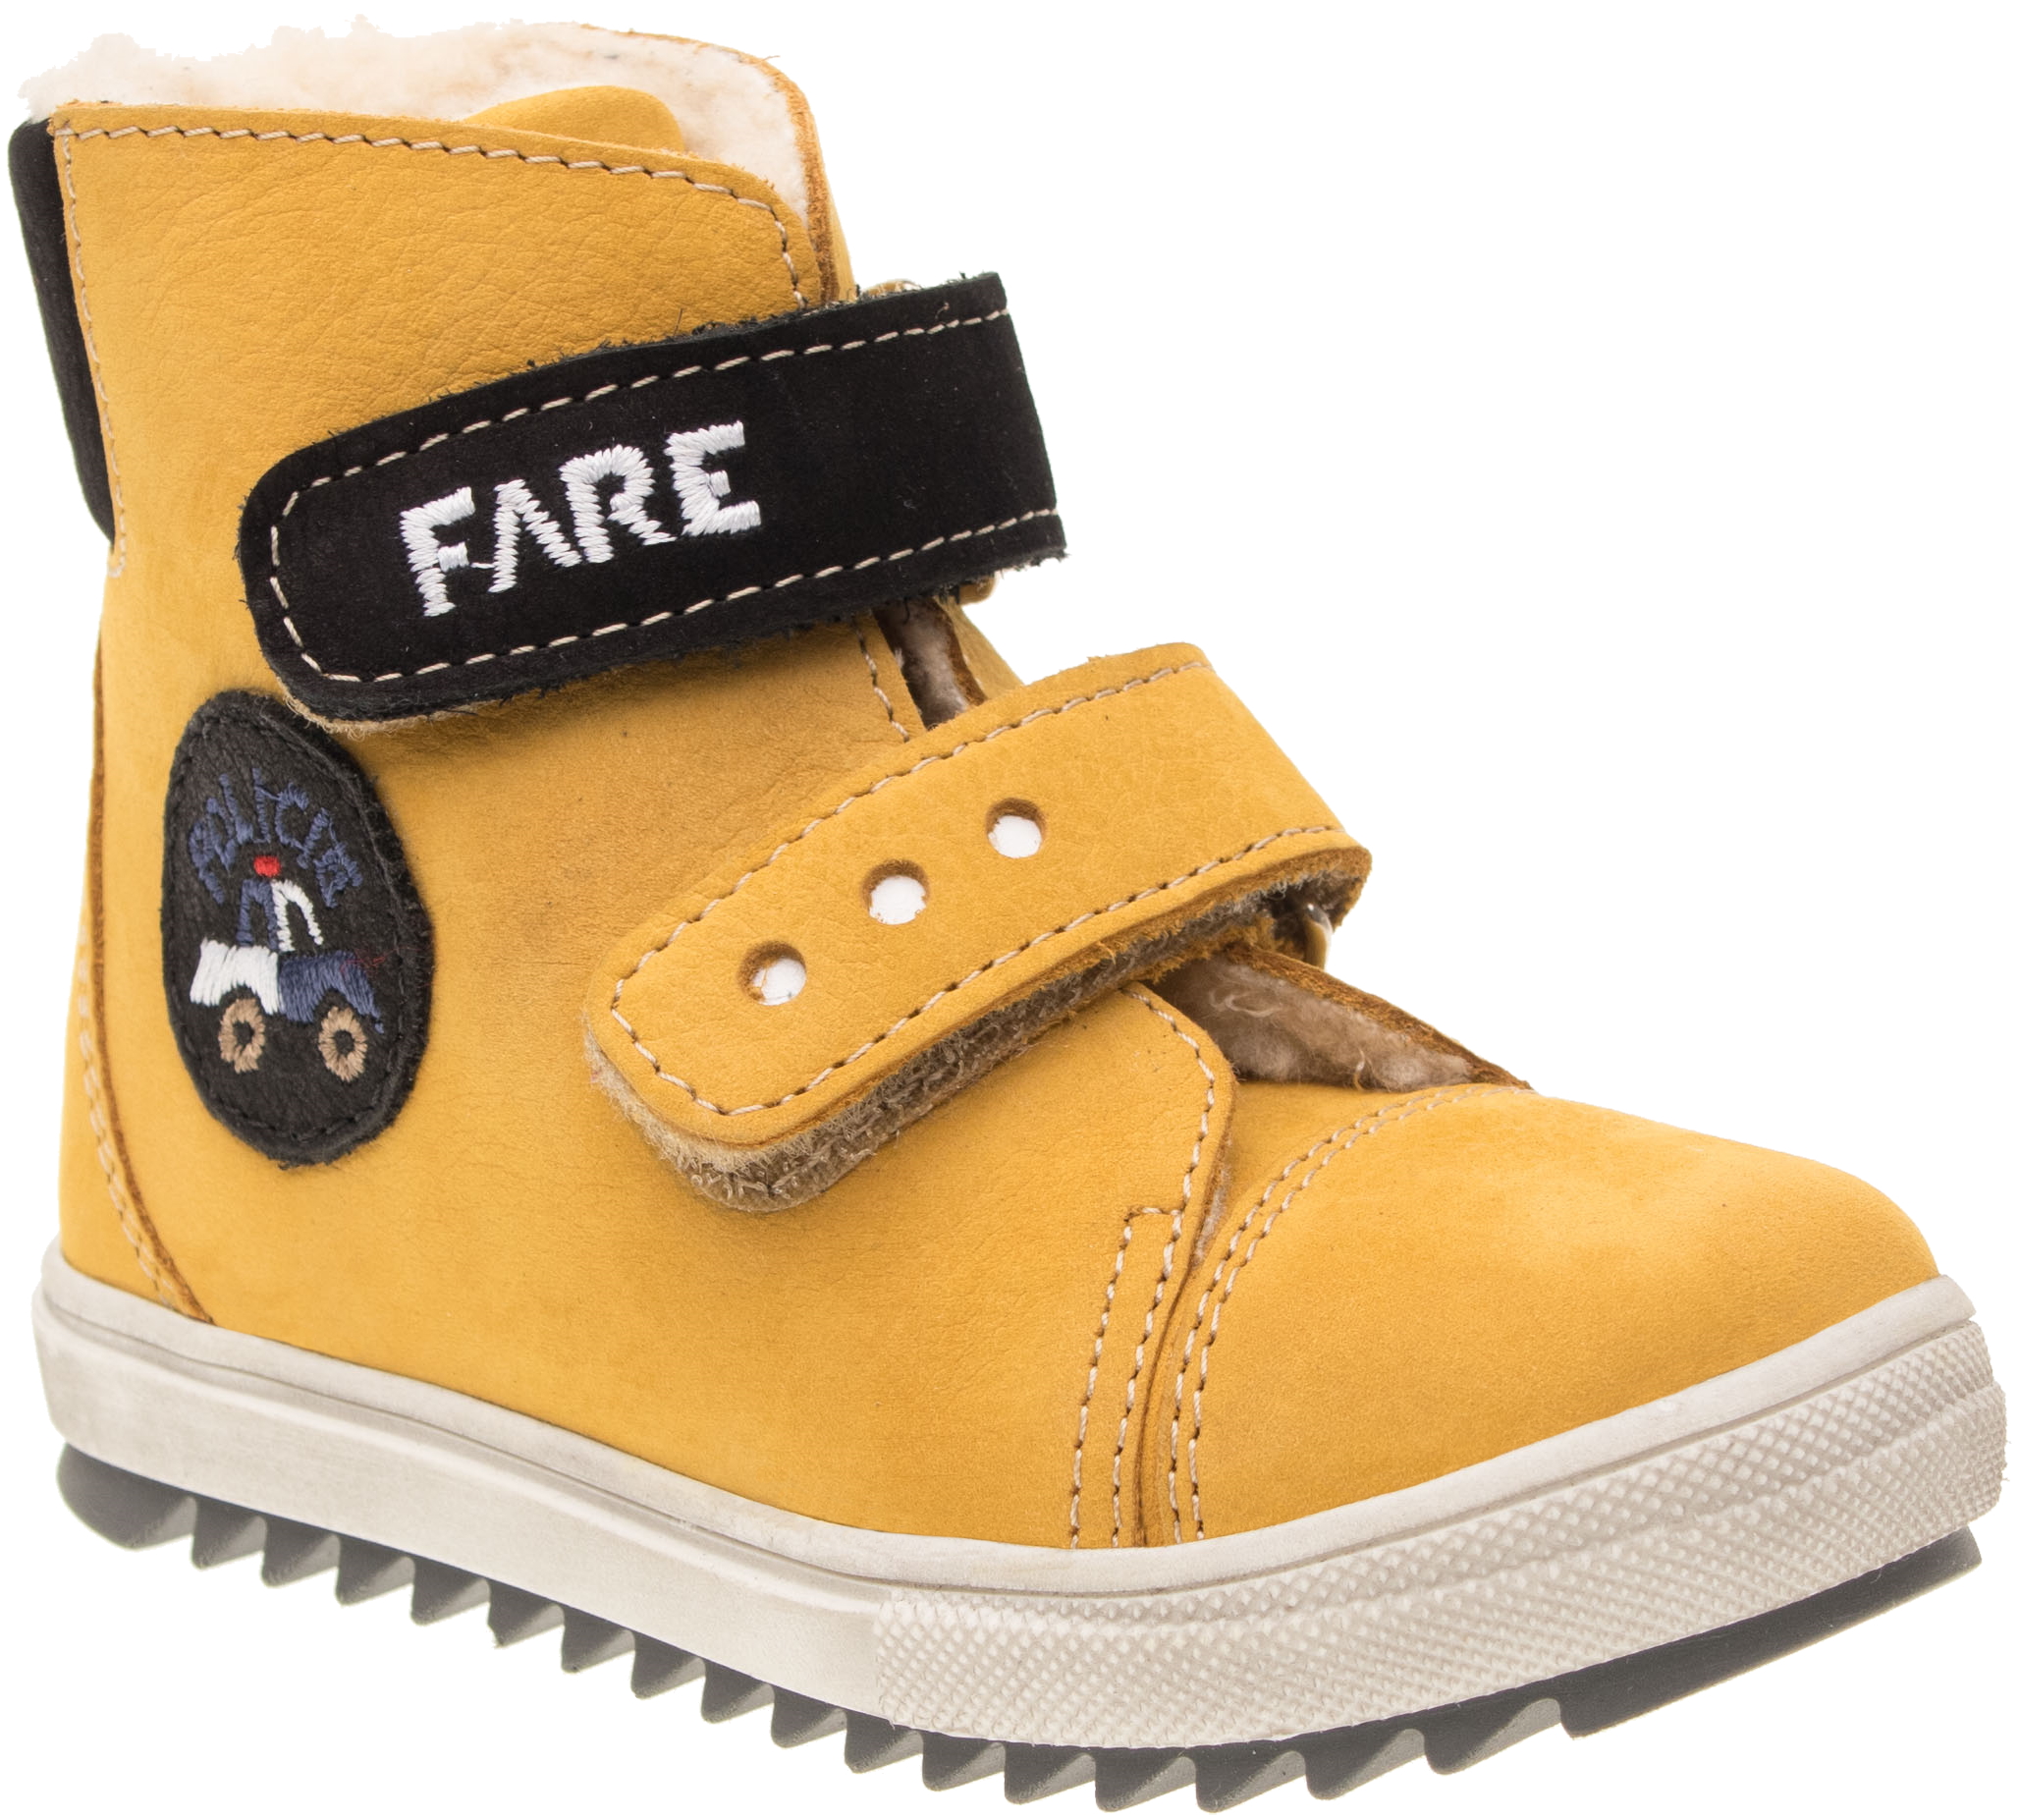 Dětské zimní kotníkové boty Fare 2149282 žluté Velikost: 23 (EU)